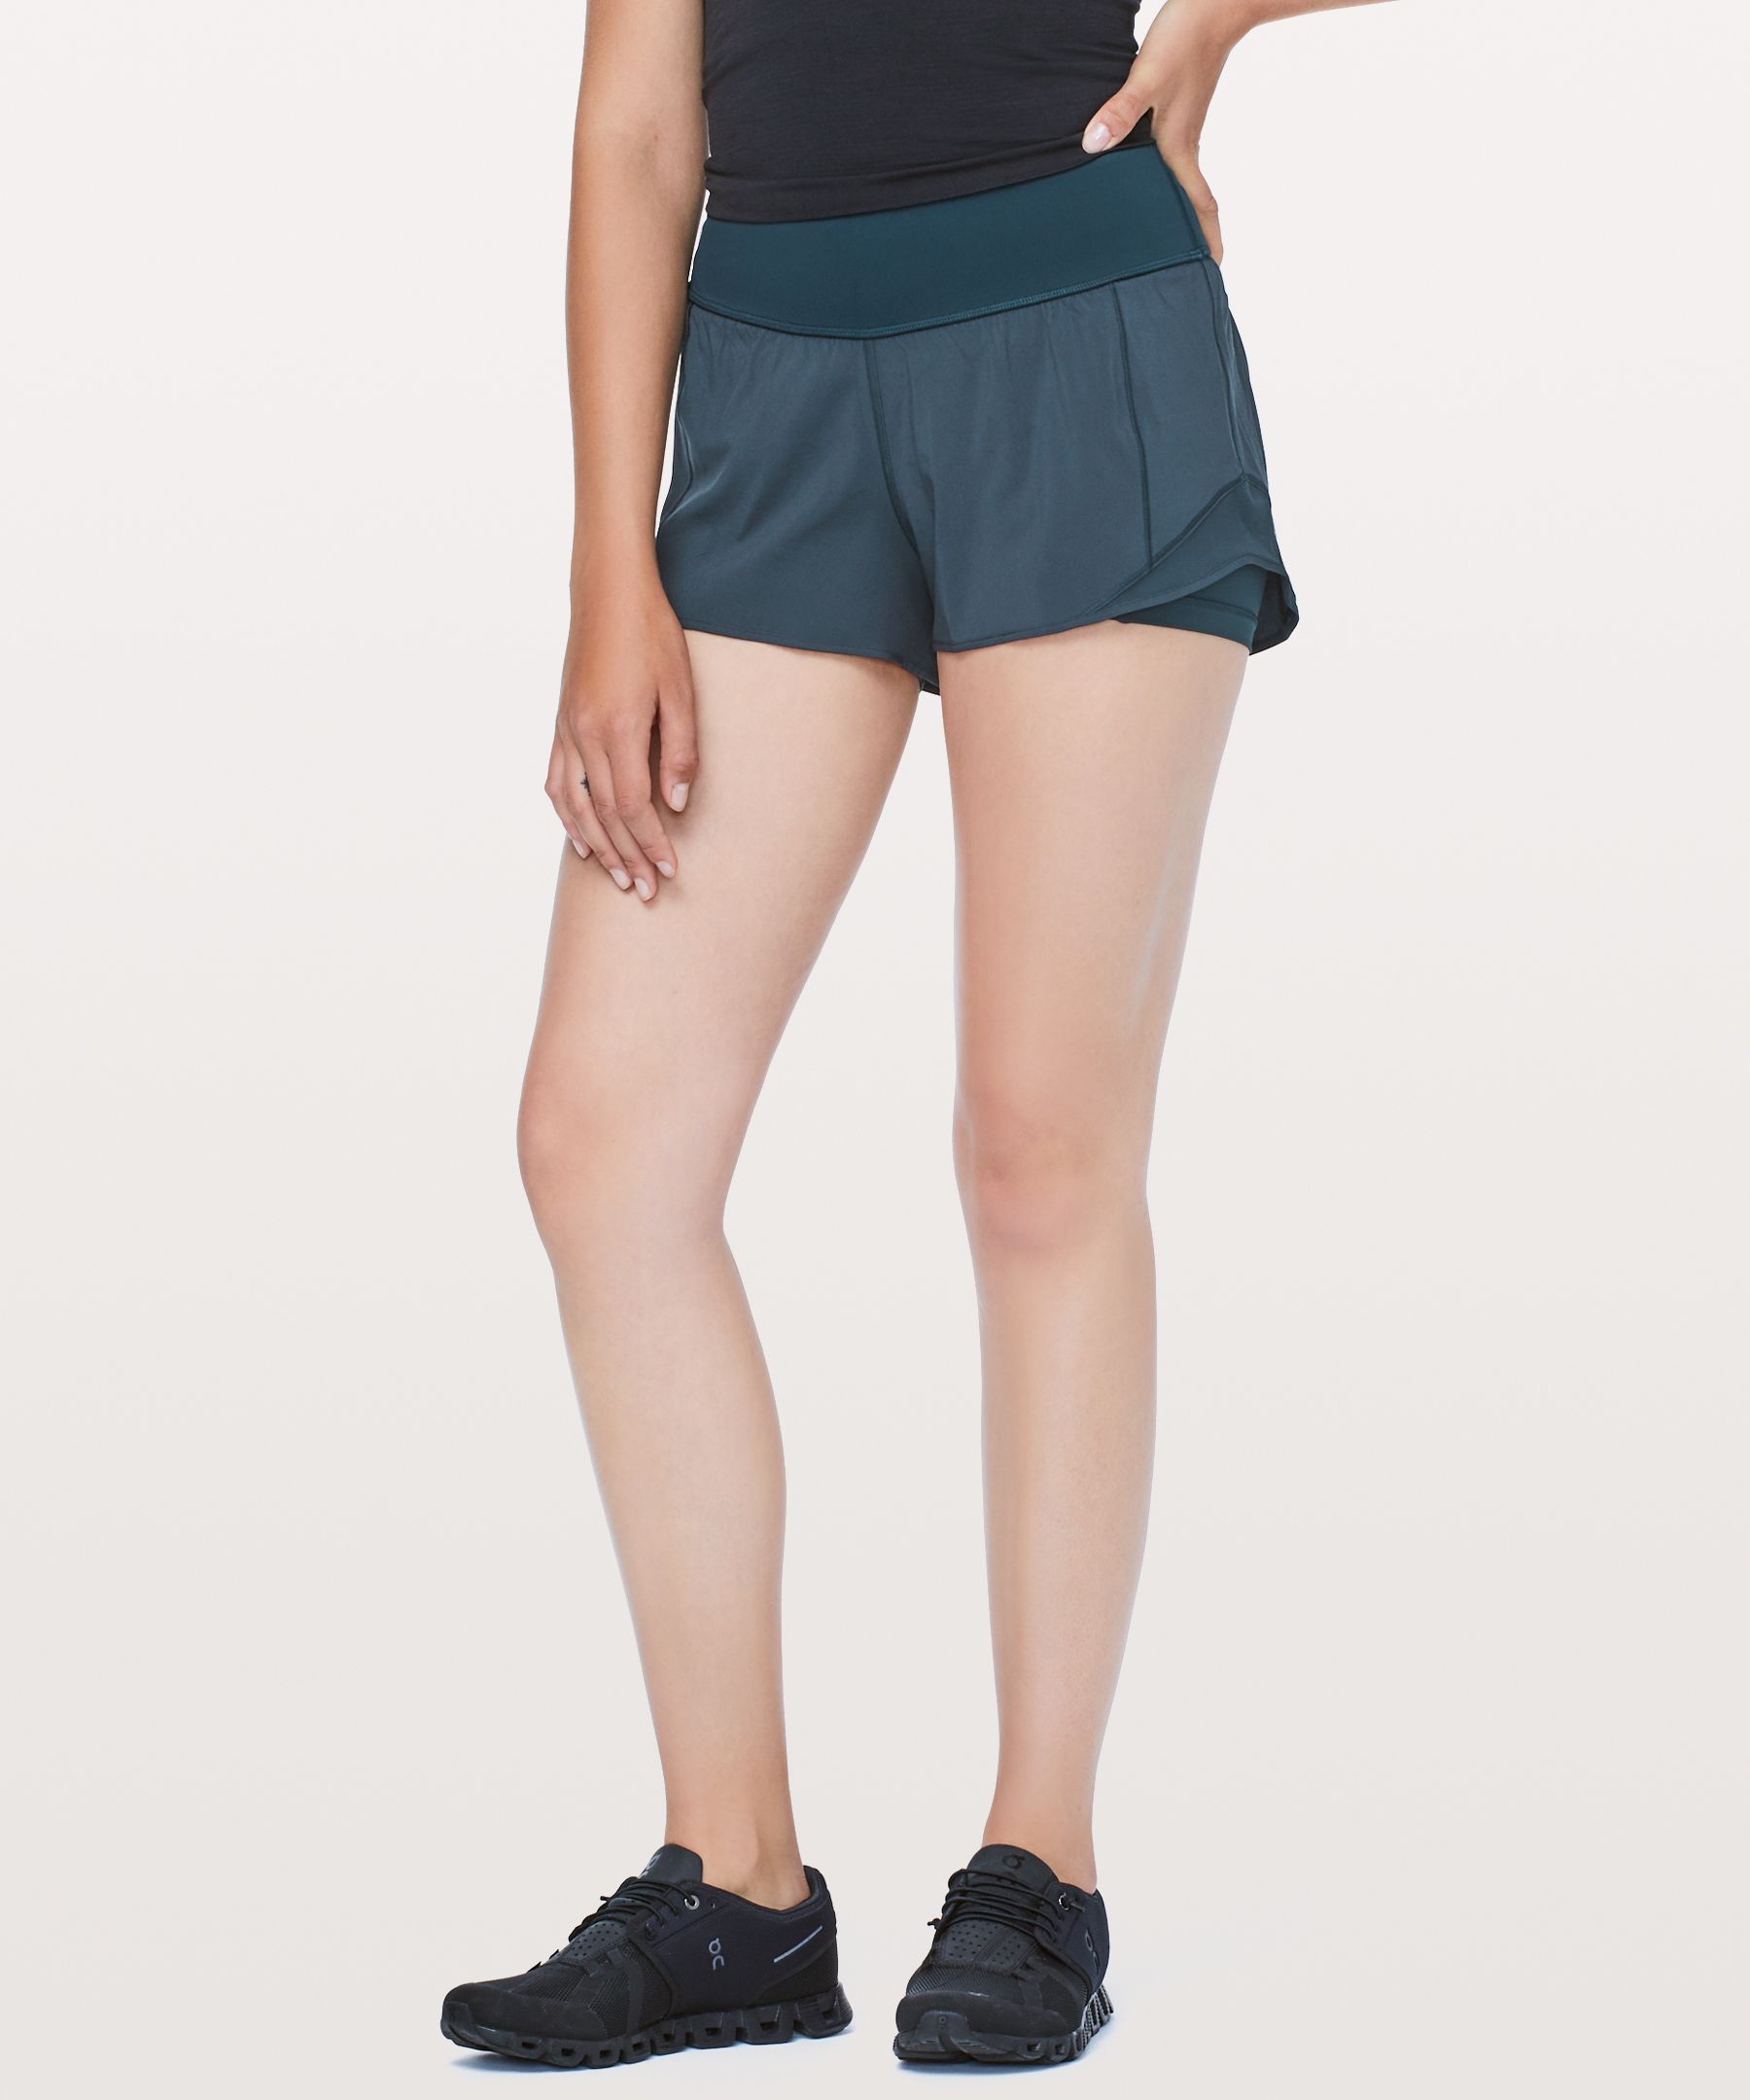 lululemon athletica, Shorts, Lululemon Black Hotty Hot Shorts Size 2